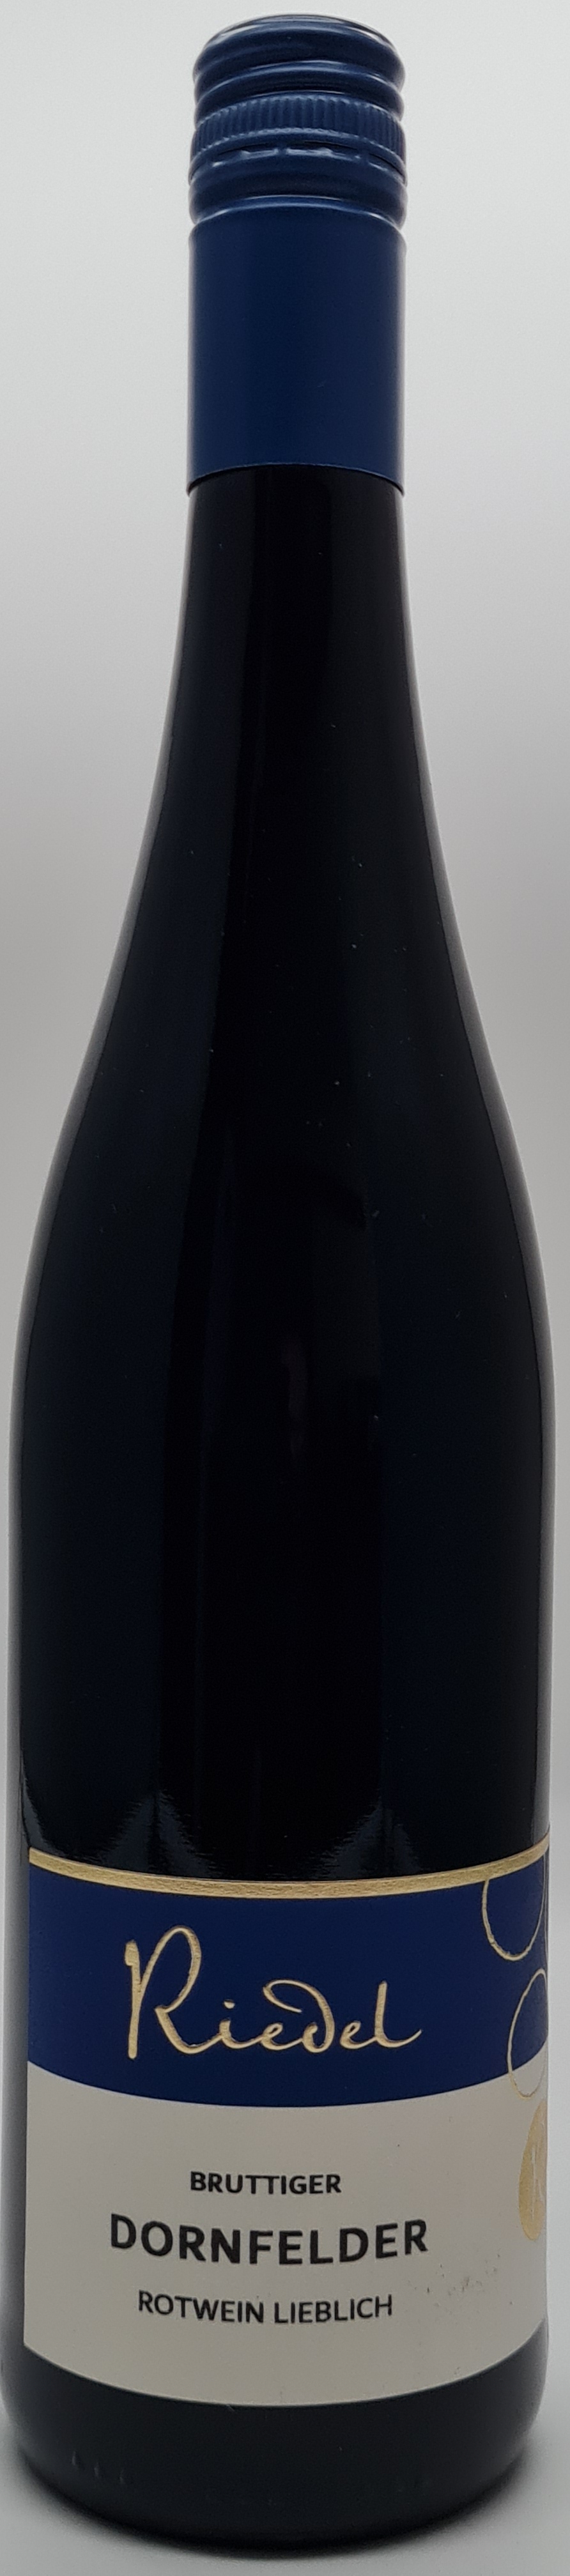 Weinshop Riedel - 2020 Bruttiger Dornfelder Rotwein lieblich, Ortswein,  Mosel